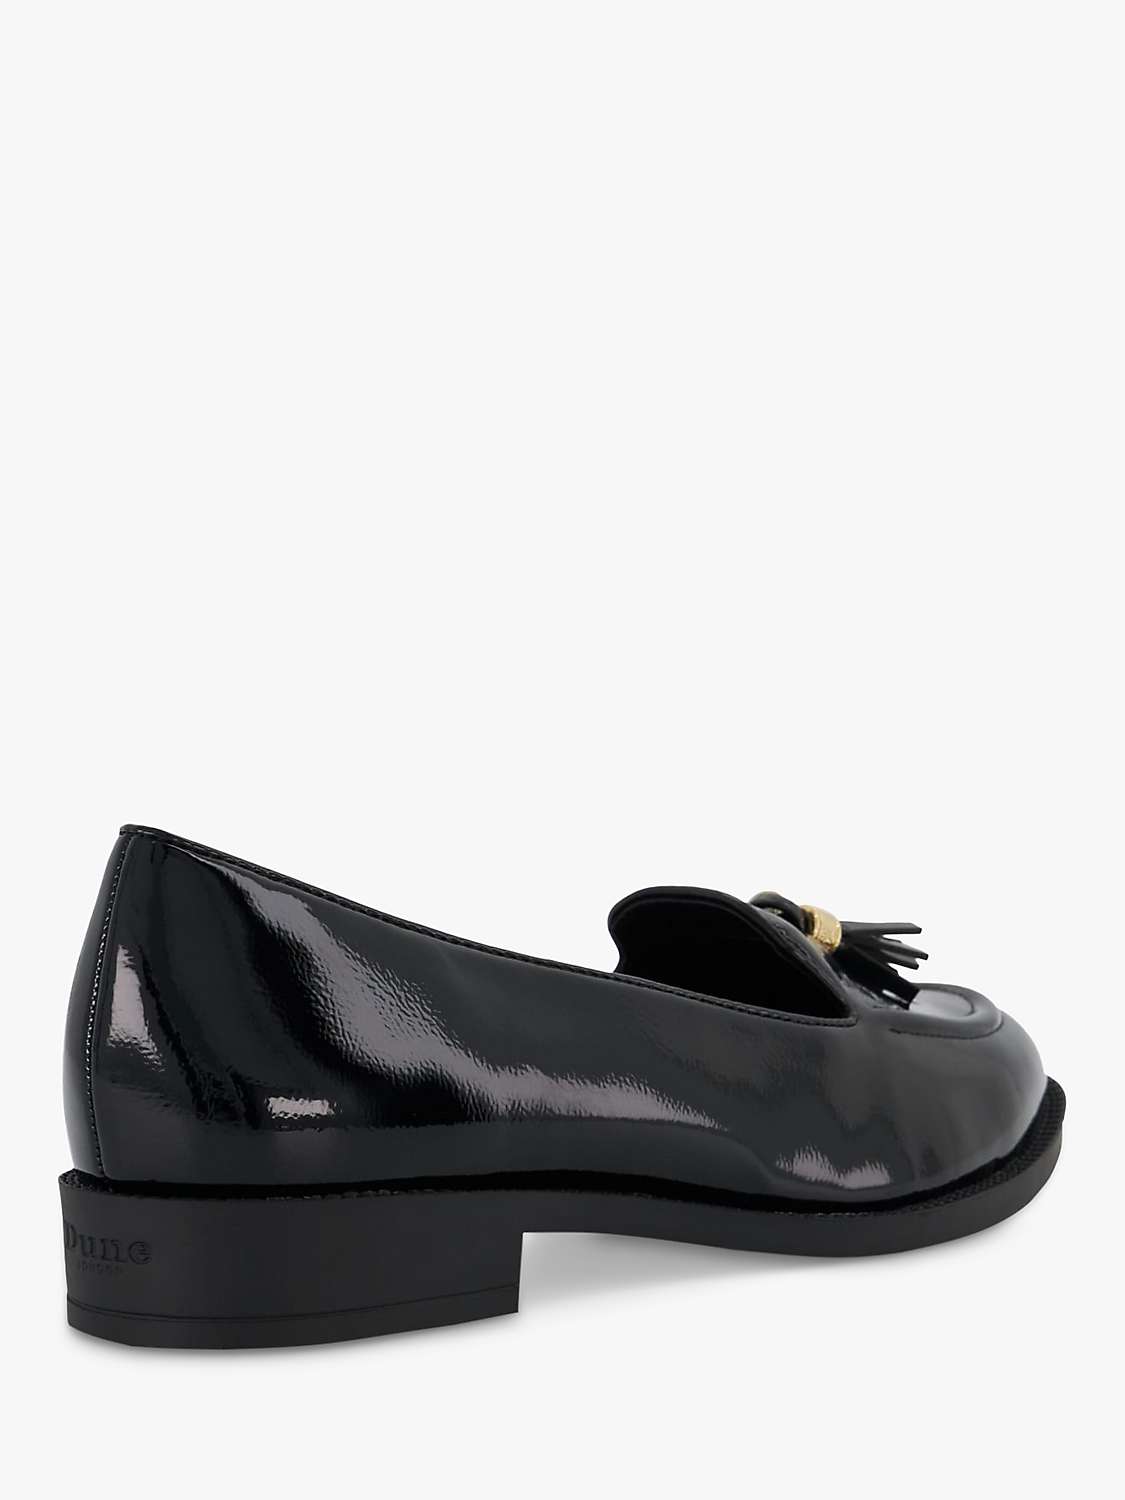 Buy Dune Wide Fit Global Tassel Loafers, Black Online at johnlewis.com